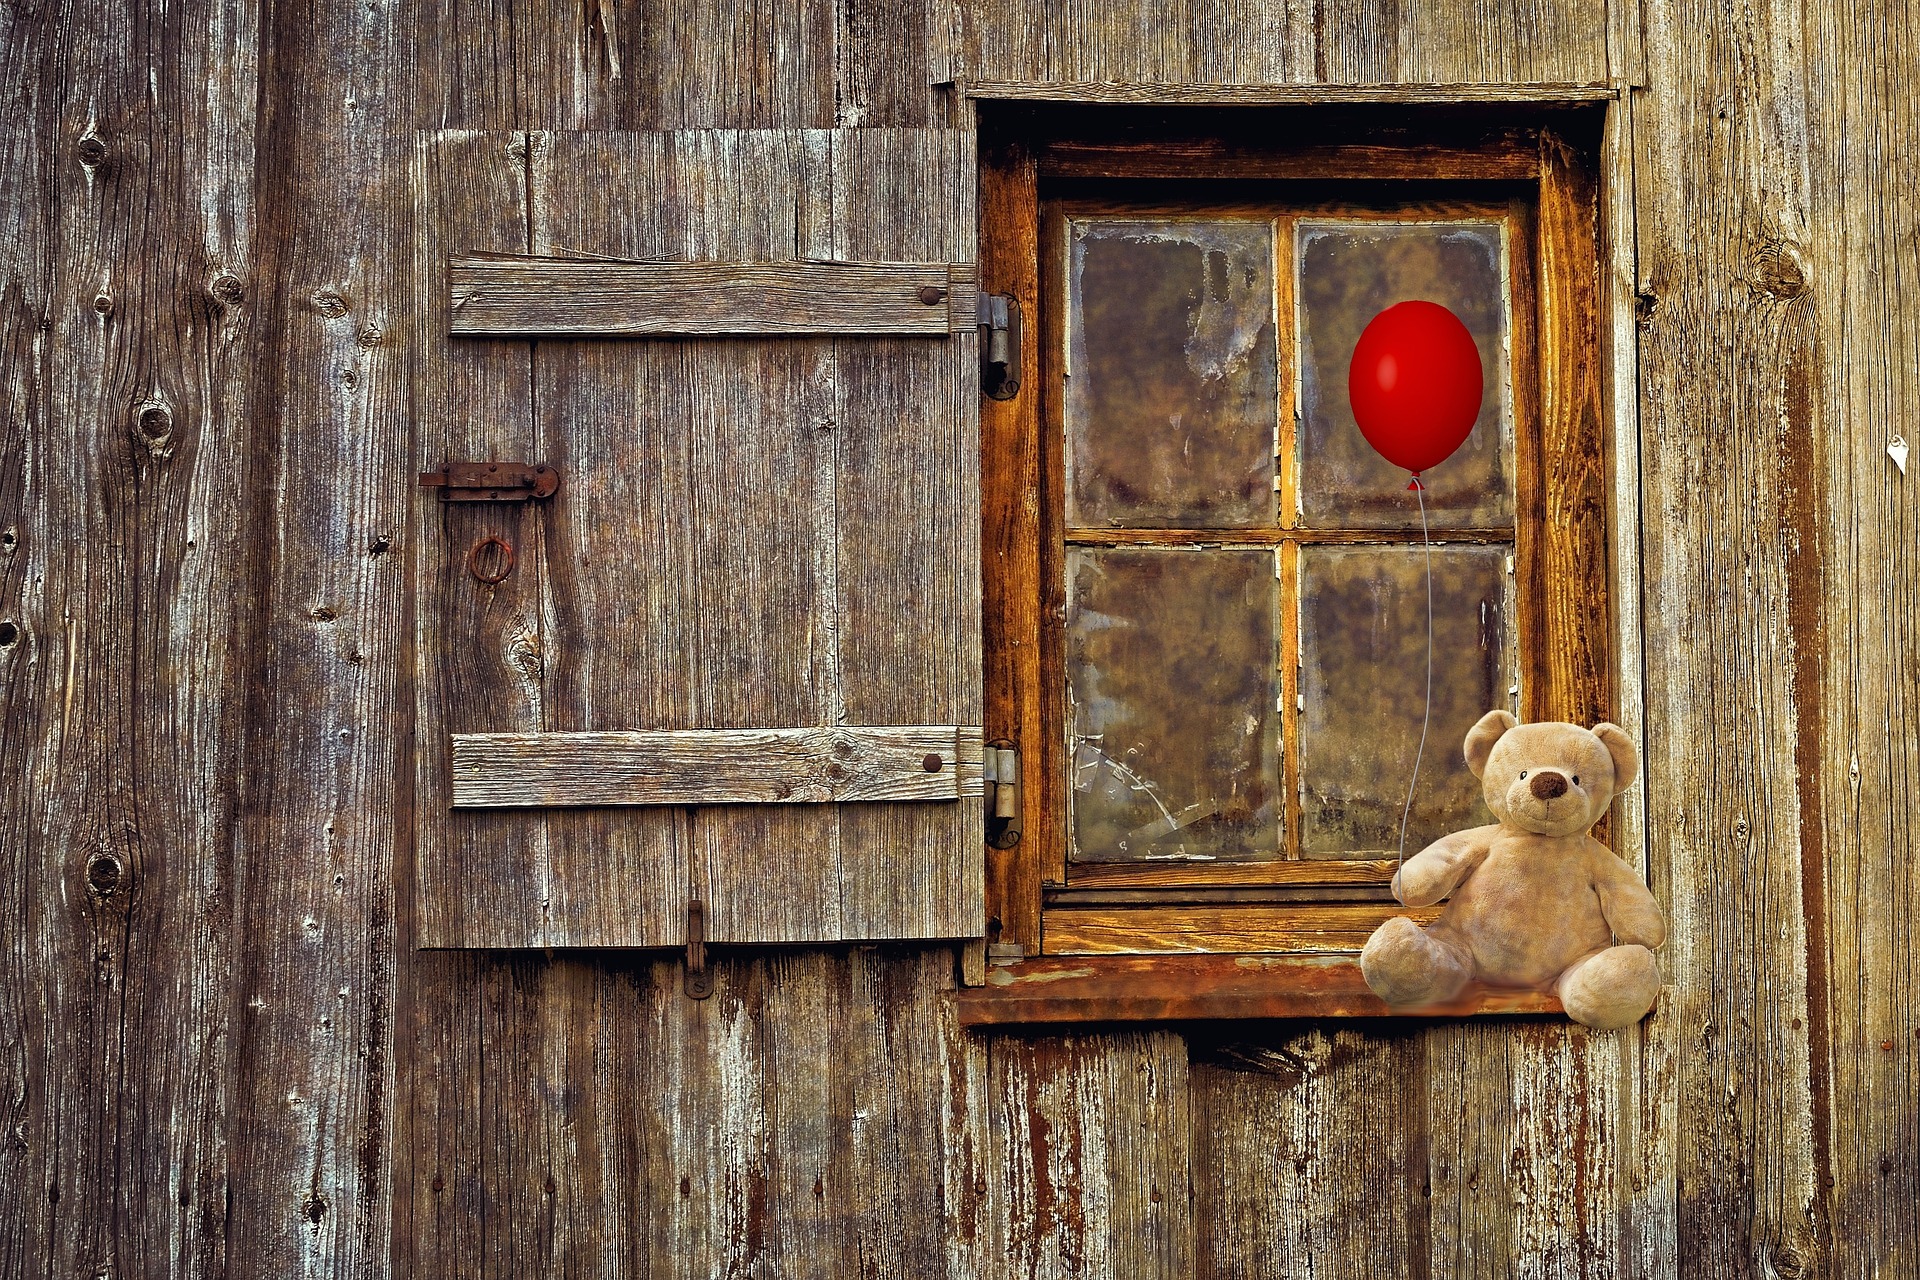 Ted, Teddy bear